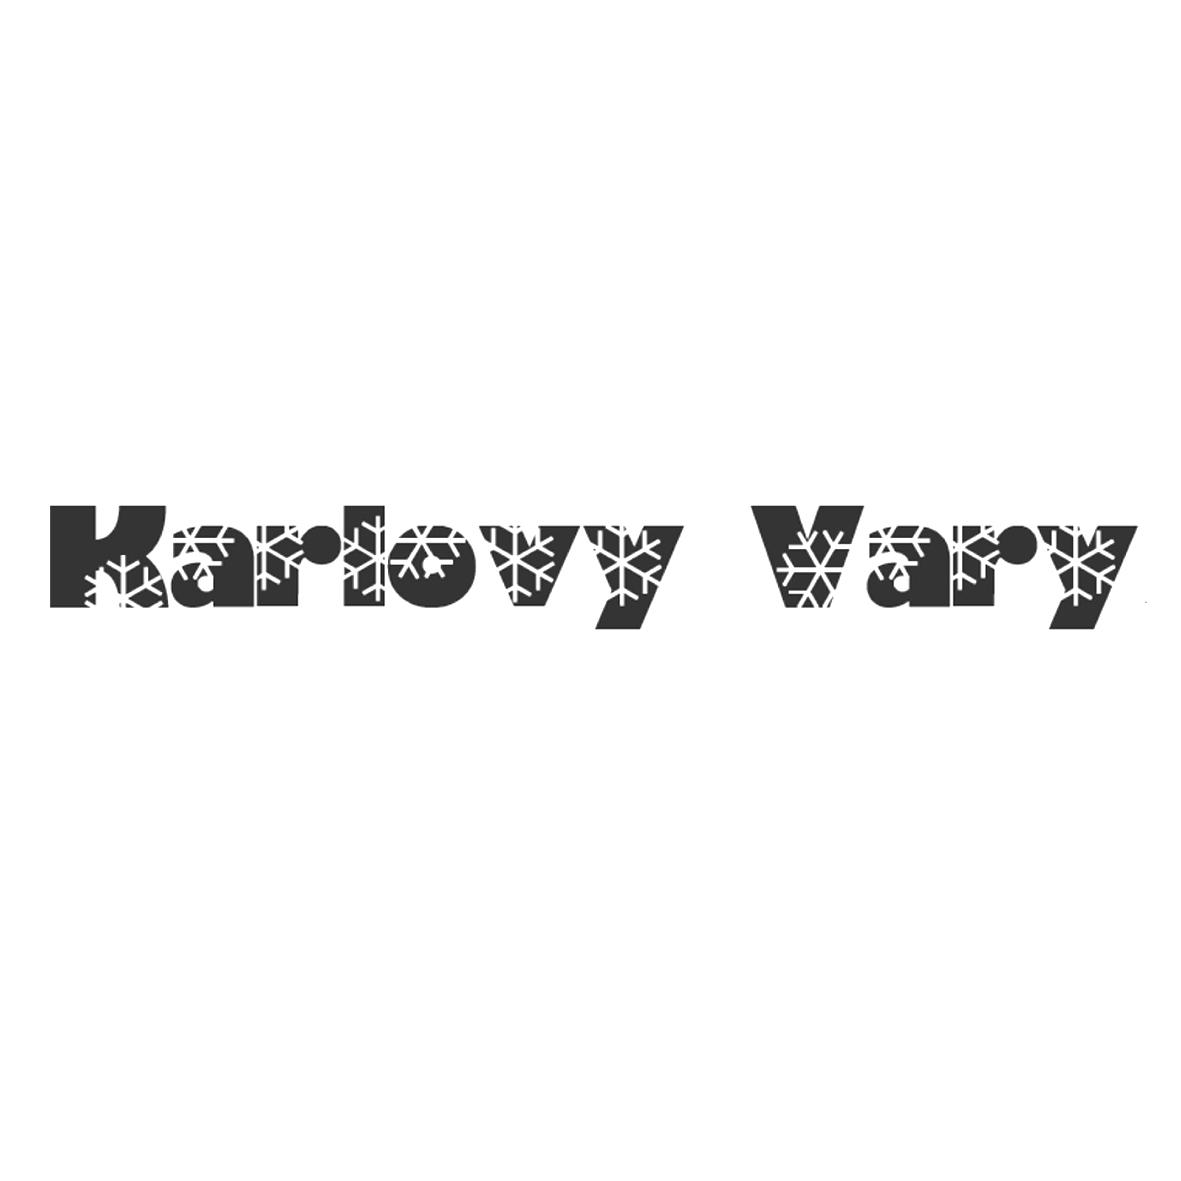 KARLOVY VARY